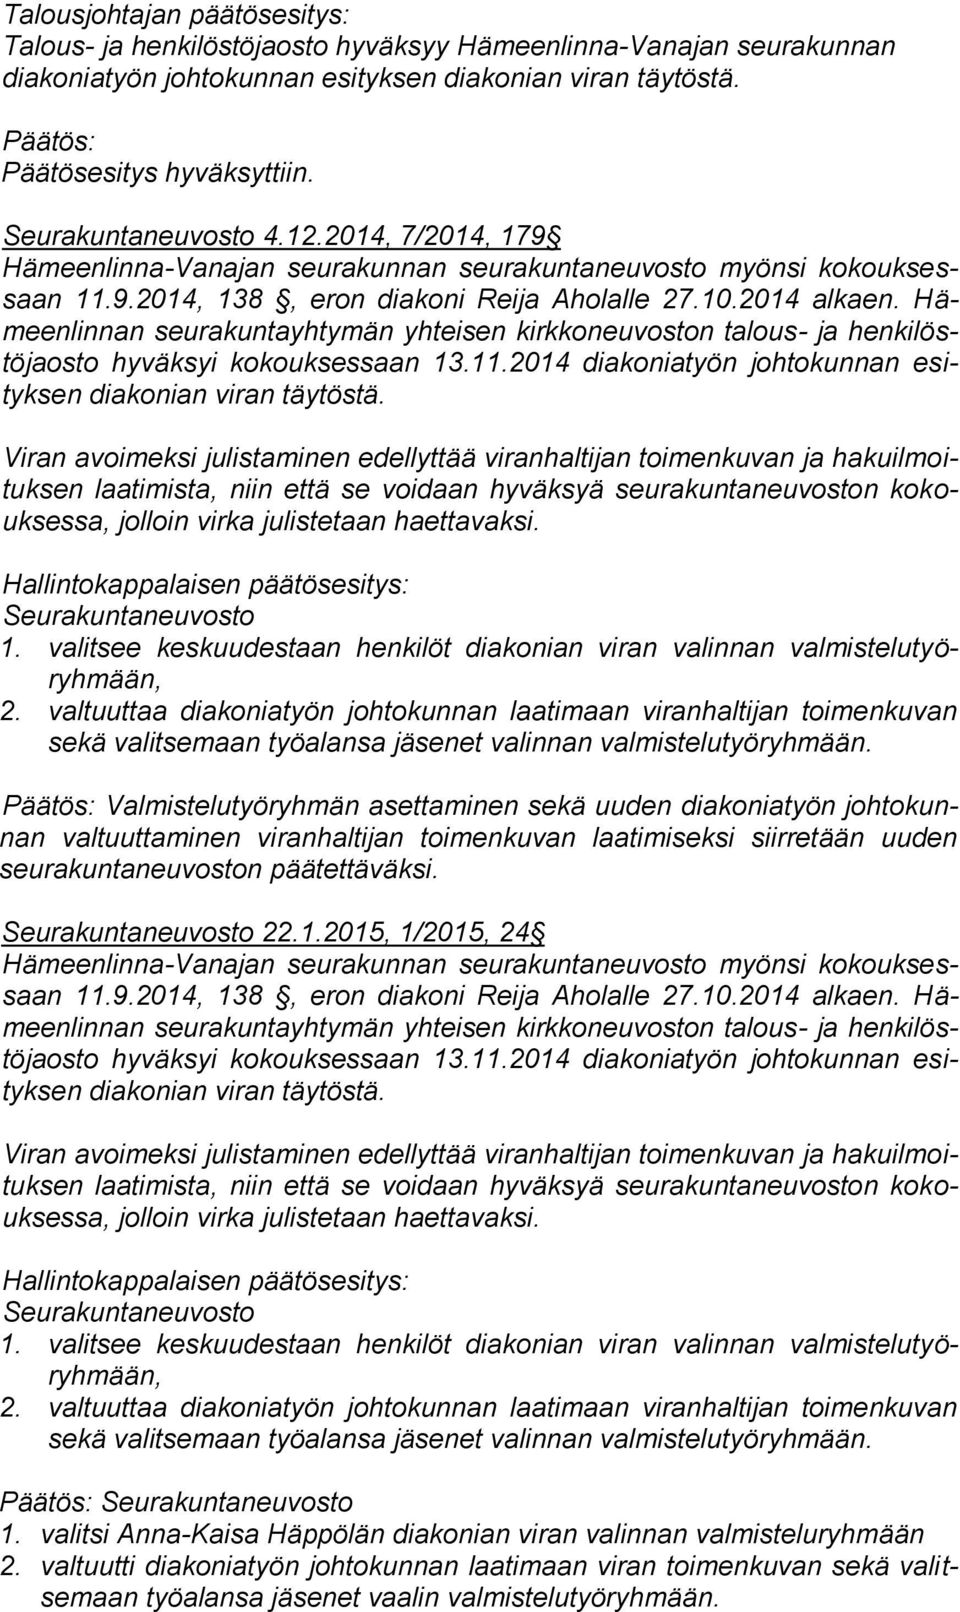 Hämeenlinnan seurakuntayhtymän yhteisen kirkkoneuvoston talous- ja henkilöstöjaosto hyväksyi kokouksessaan 13.11.2014 diakoniatyön johtokunnan esityksen diakonian viran täytöstä.